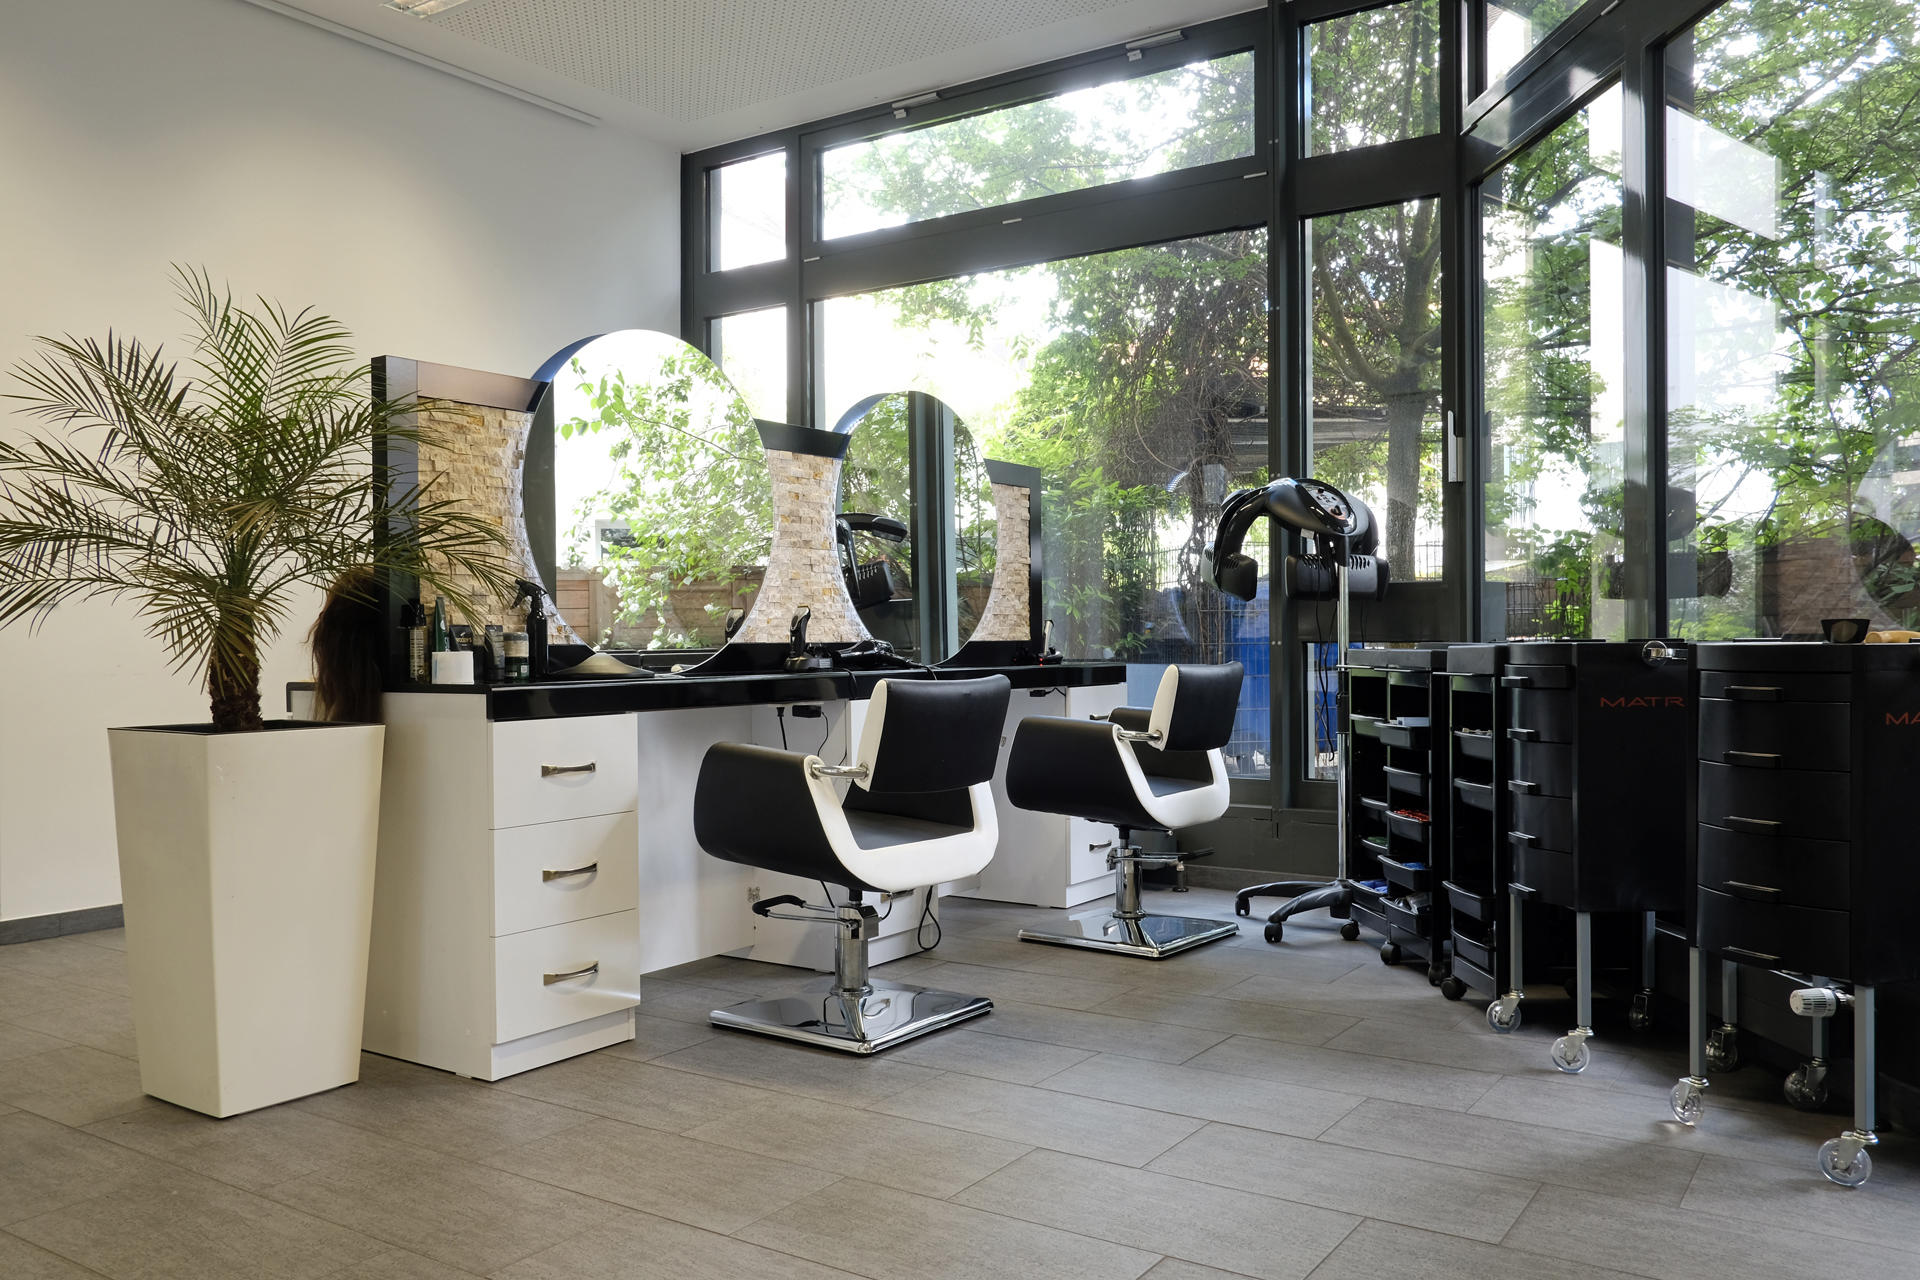 Geschäft von innen - Friseur und Kosmetikstudio Beauty Oasis München